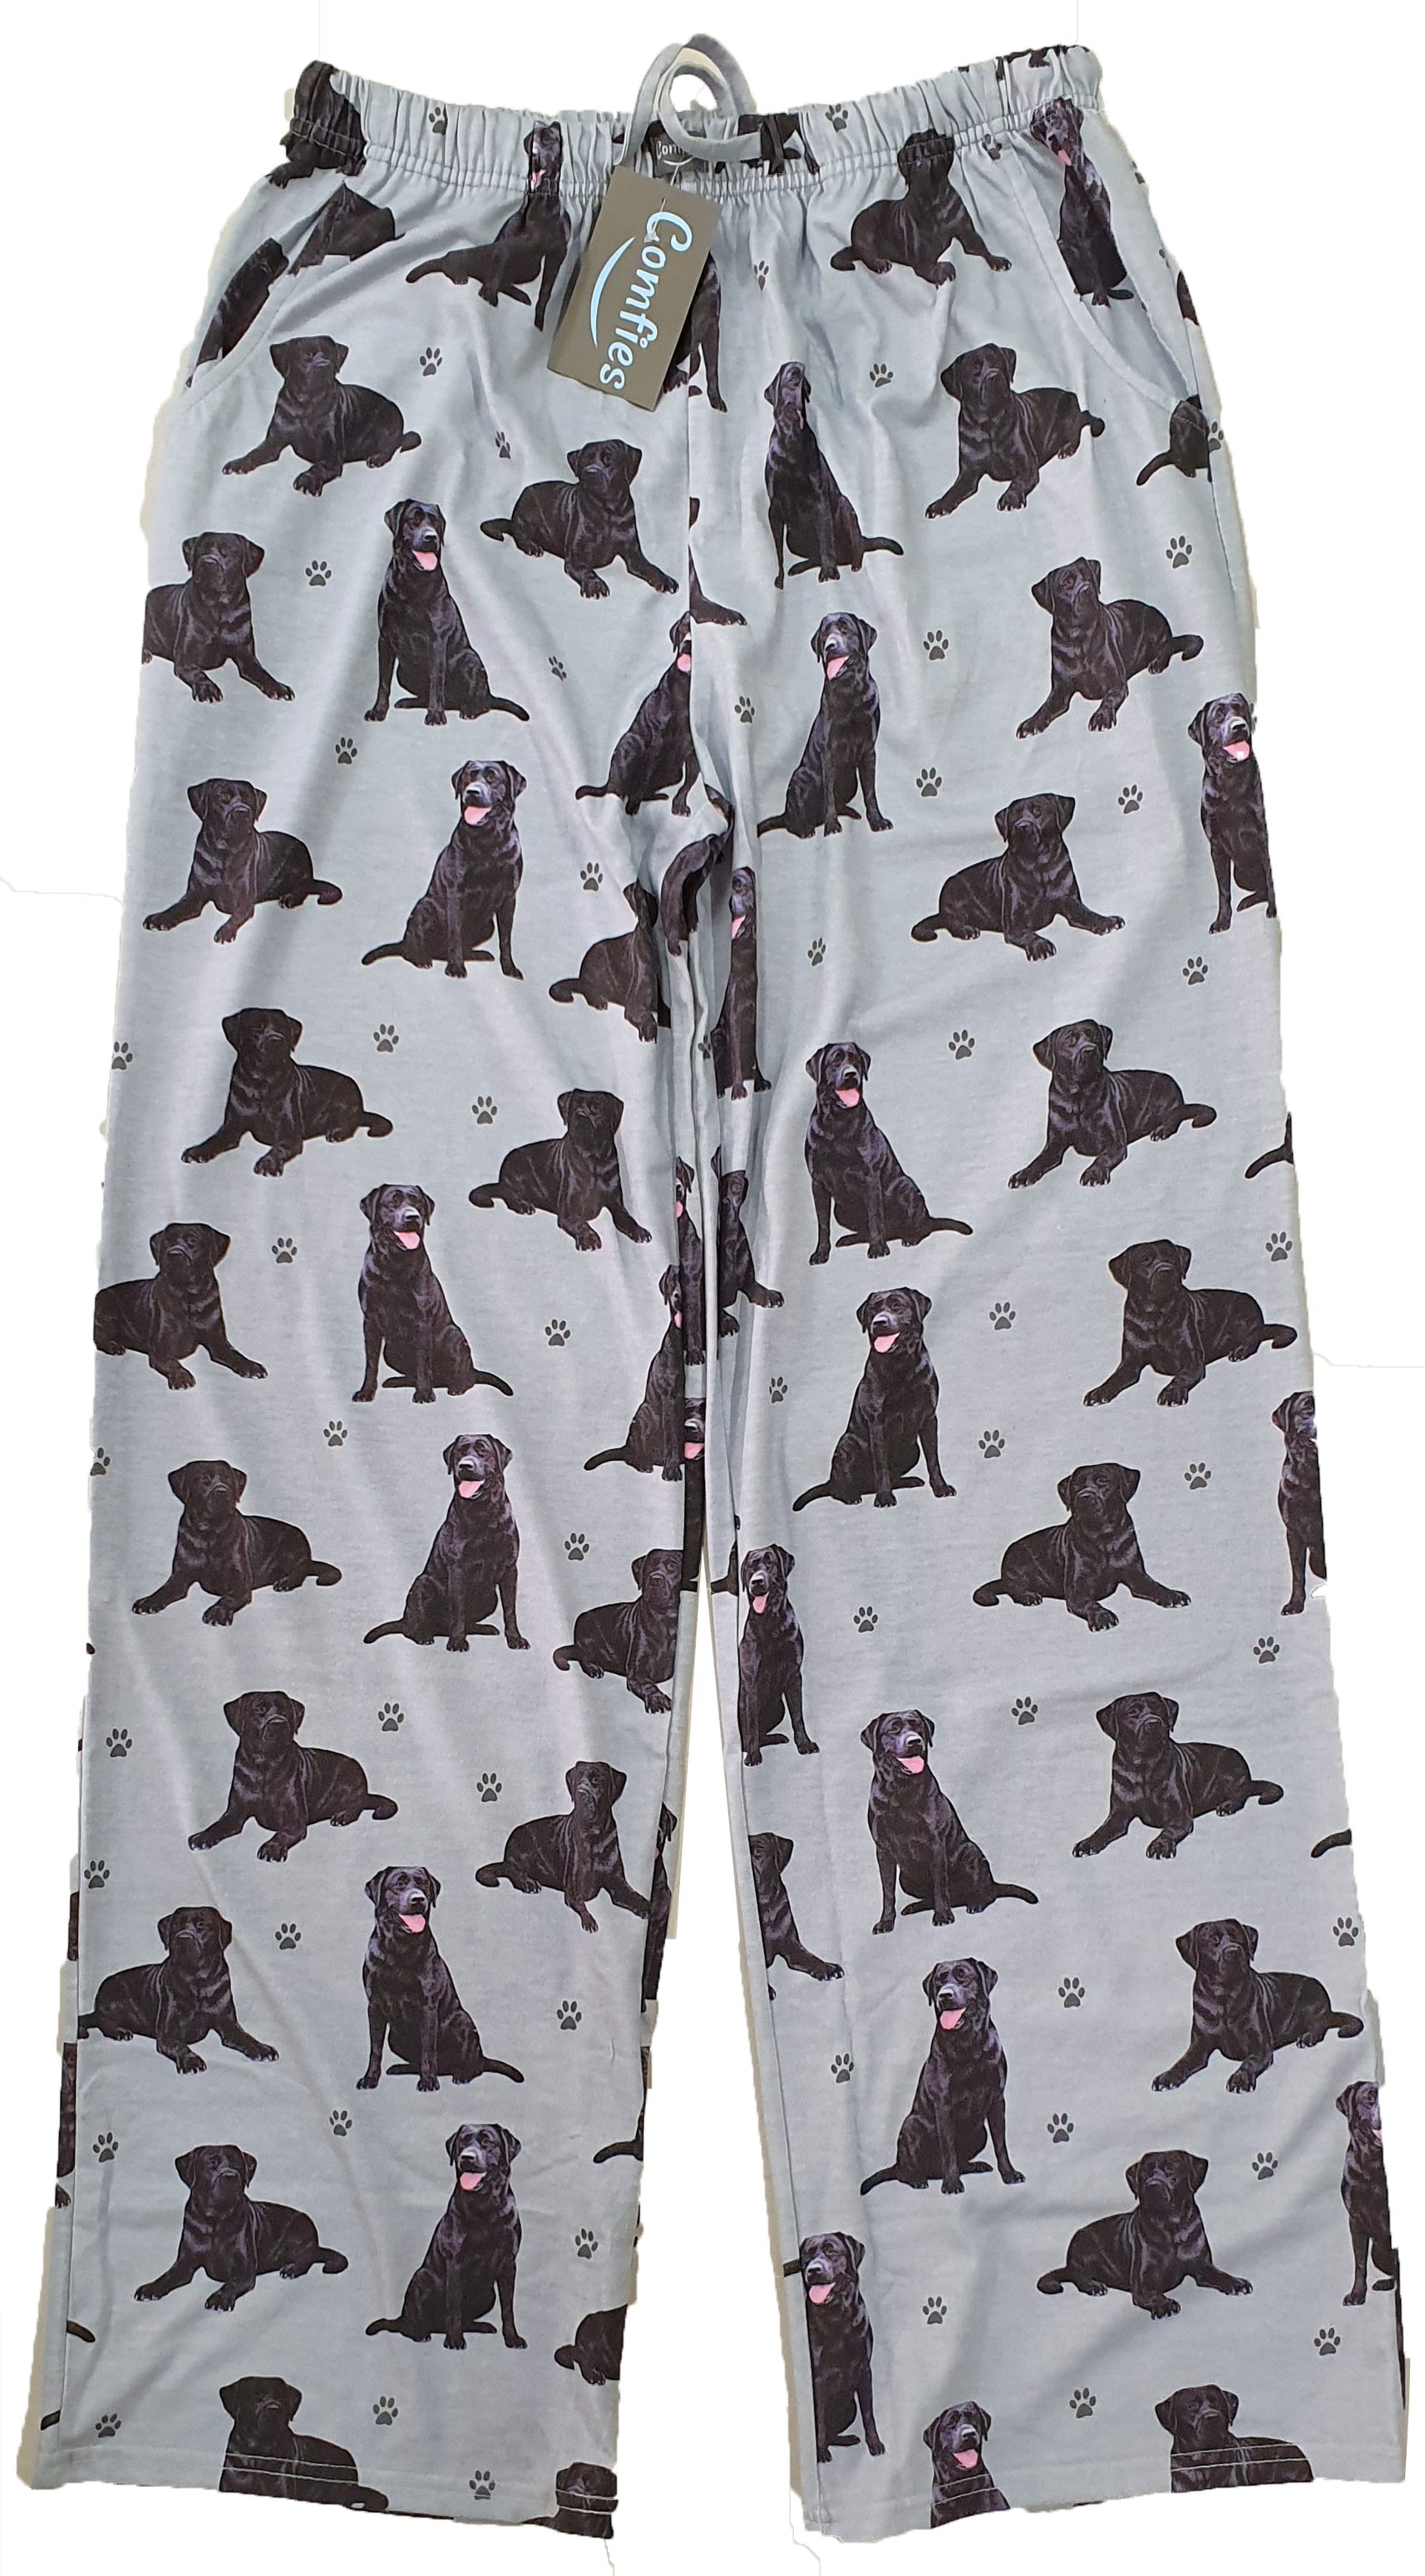 Labrador (Black) Pajama Pants - Unisex